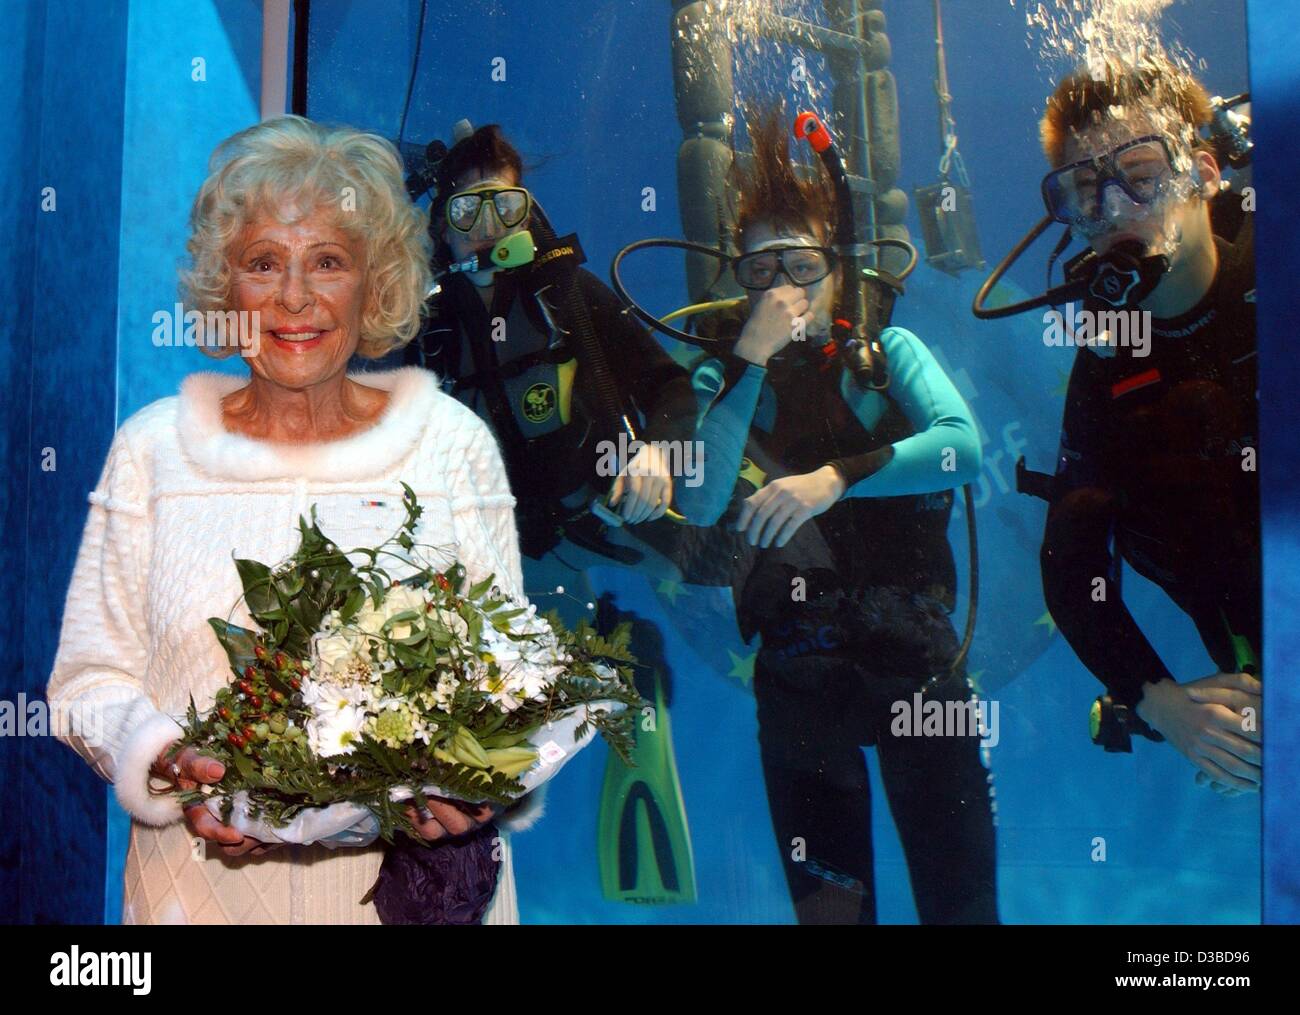 (Dpa) - deutsche Regisseurin und Fotografin Leni Riefenstahl im Bild während der Wassersport-Messe Messe "boot 2003' in Düsseldorf, 18. Januar 2003. Auf der Messe erhielt sie die Goldene Ehrennadel (goldene Ehren-Nadel) für ihre Verdienste in der Tauchen und Tauchen. Stockfoto